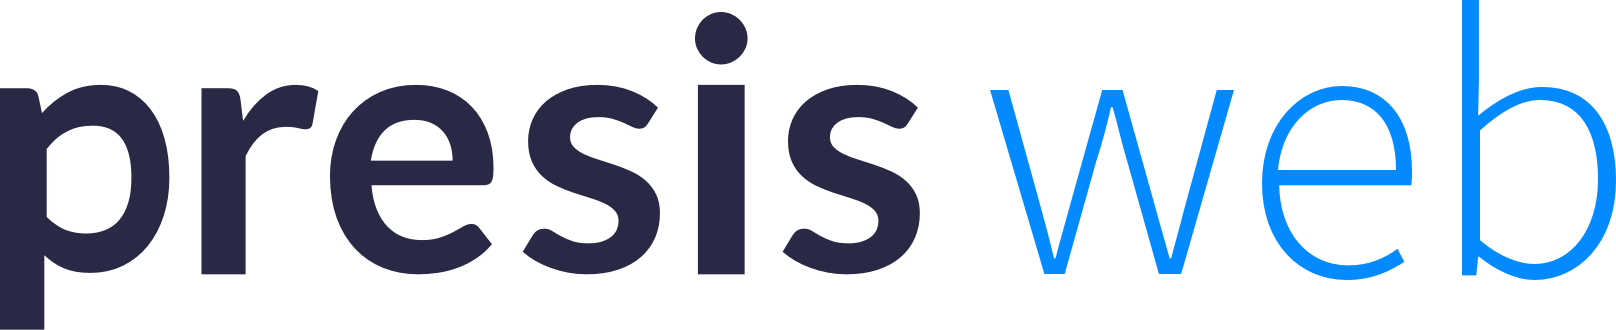 logo Presisweb